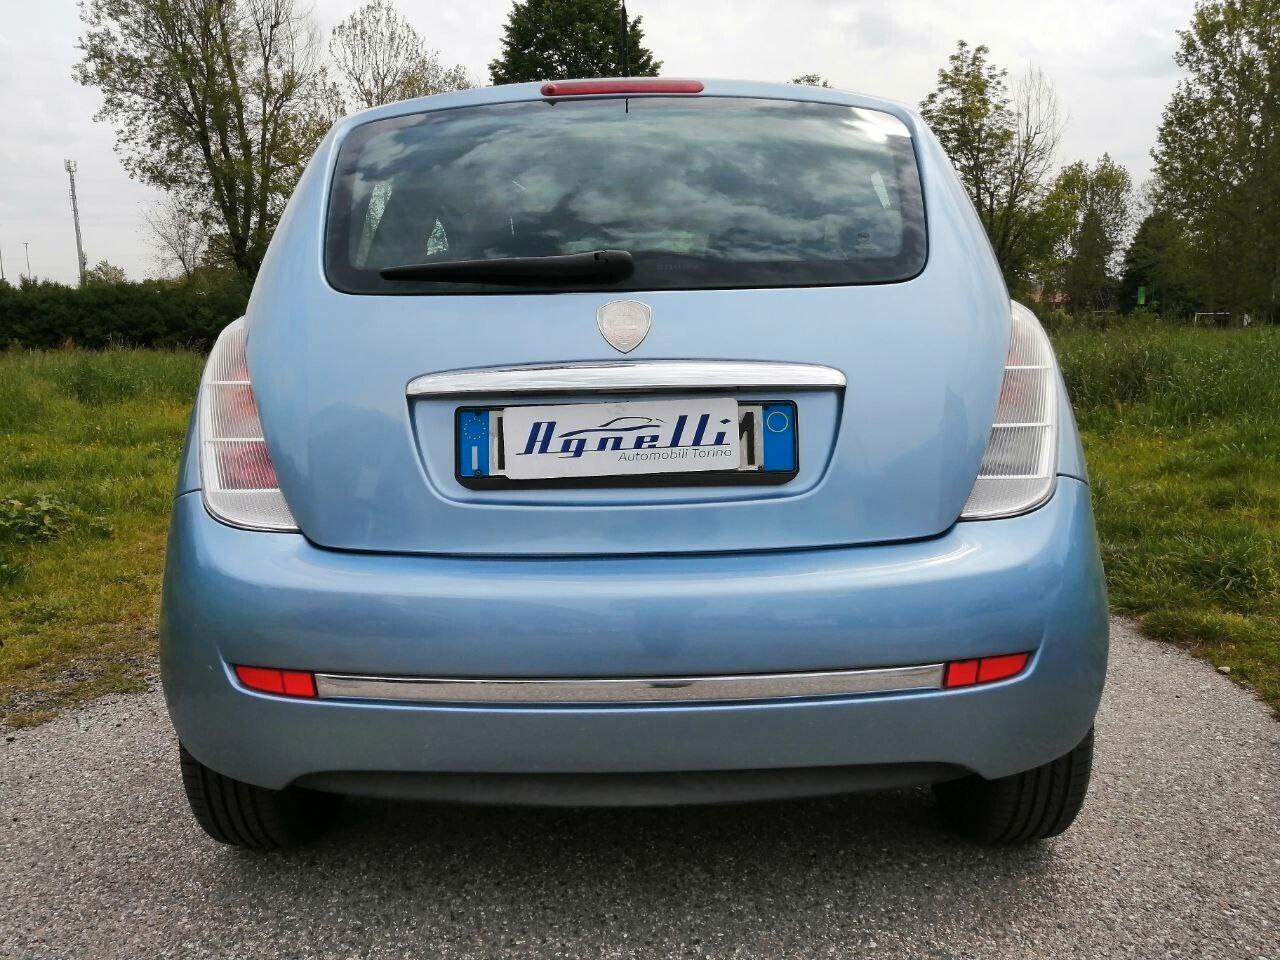 Lancia Ypsilon 1.2 Argento idonea neopatentati